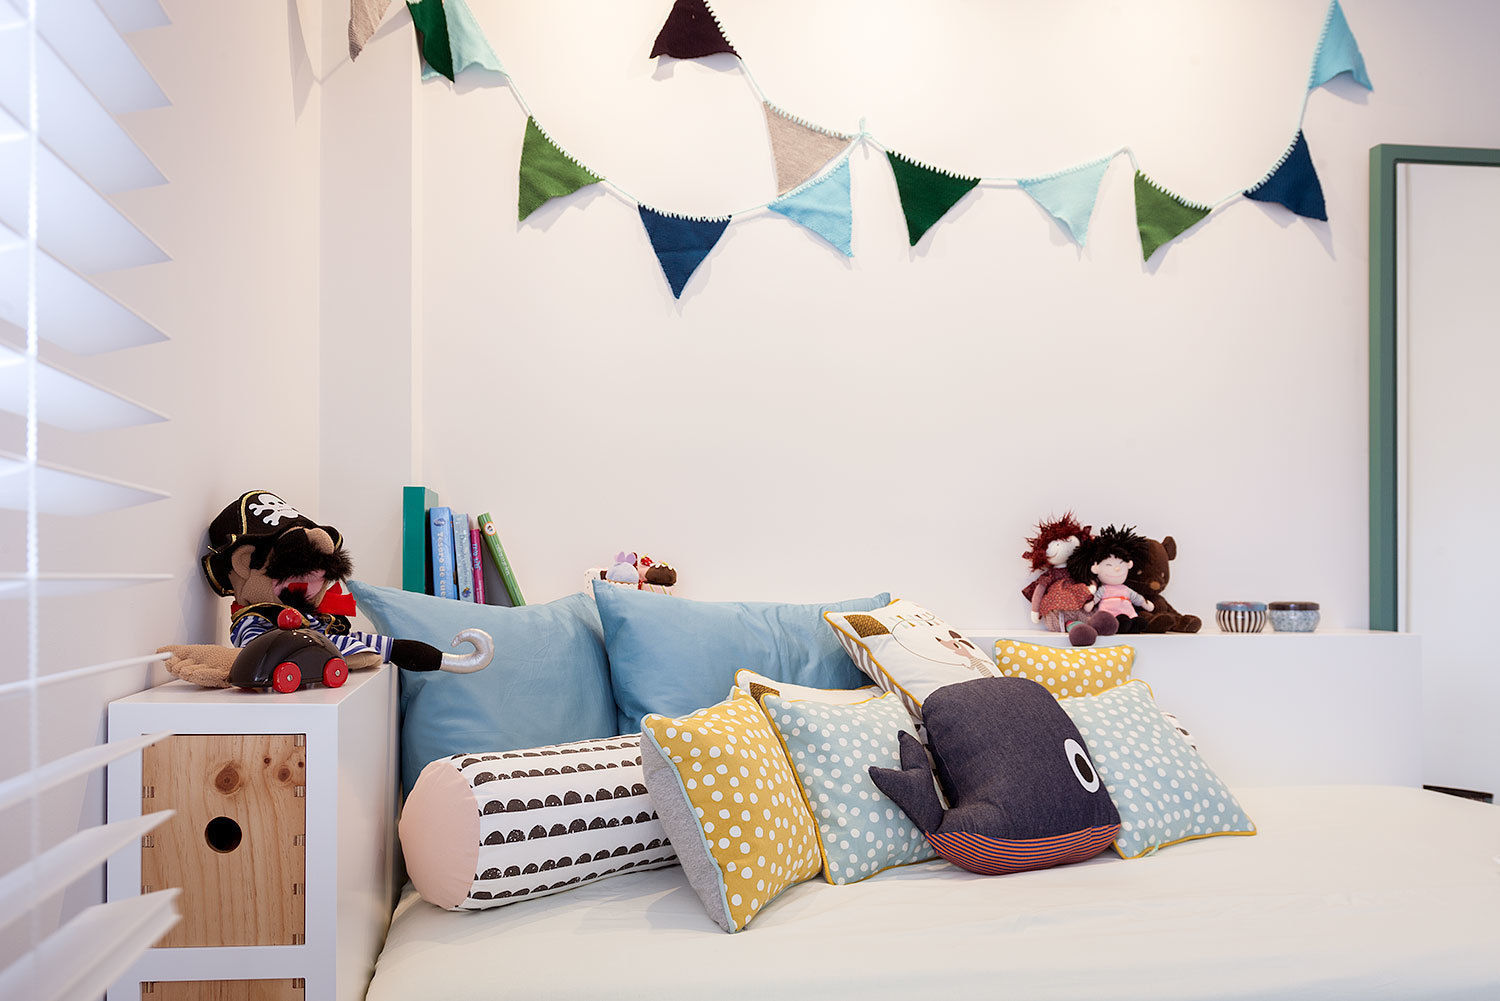 Vivienda unifamiliar en Berango Urbana Interiorismo Dormitorios infantiles modernos: